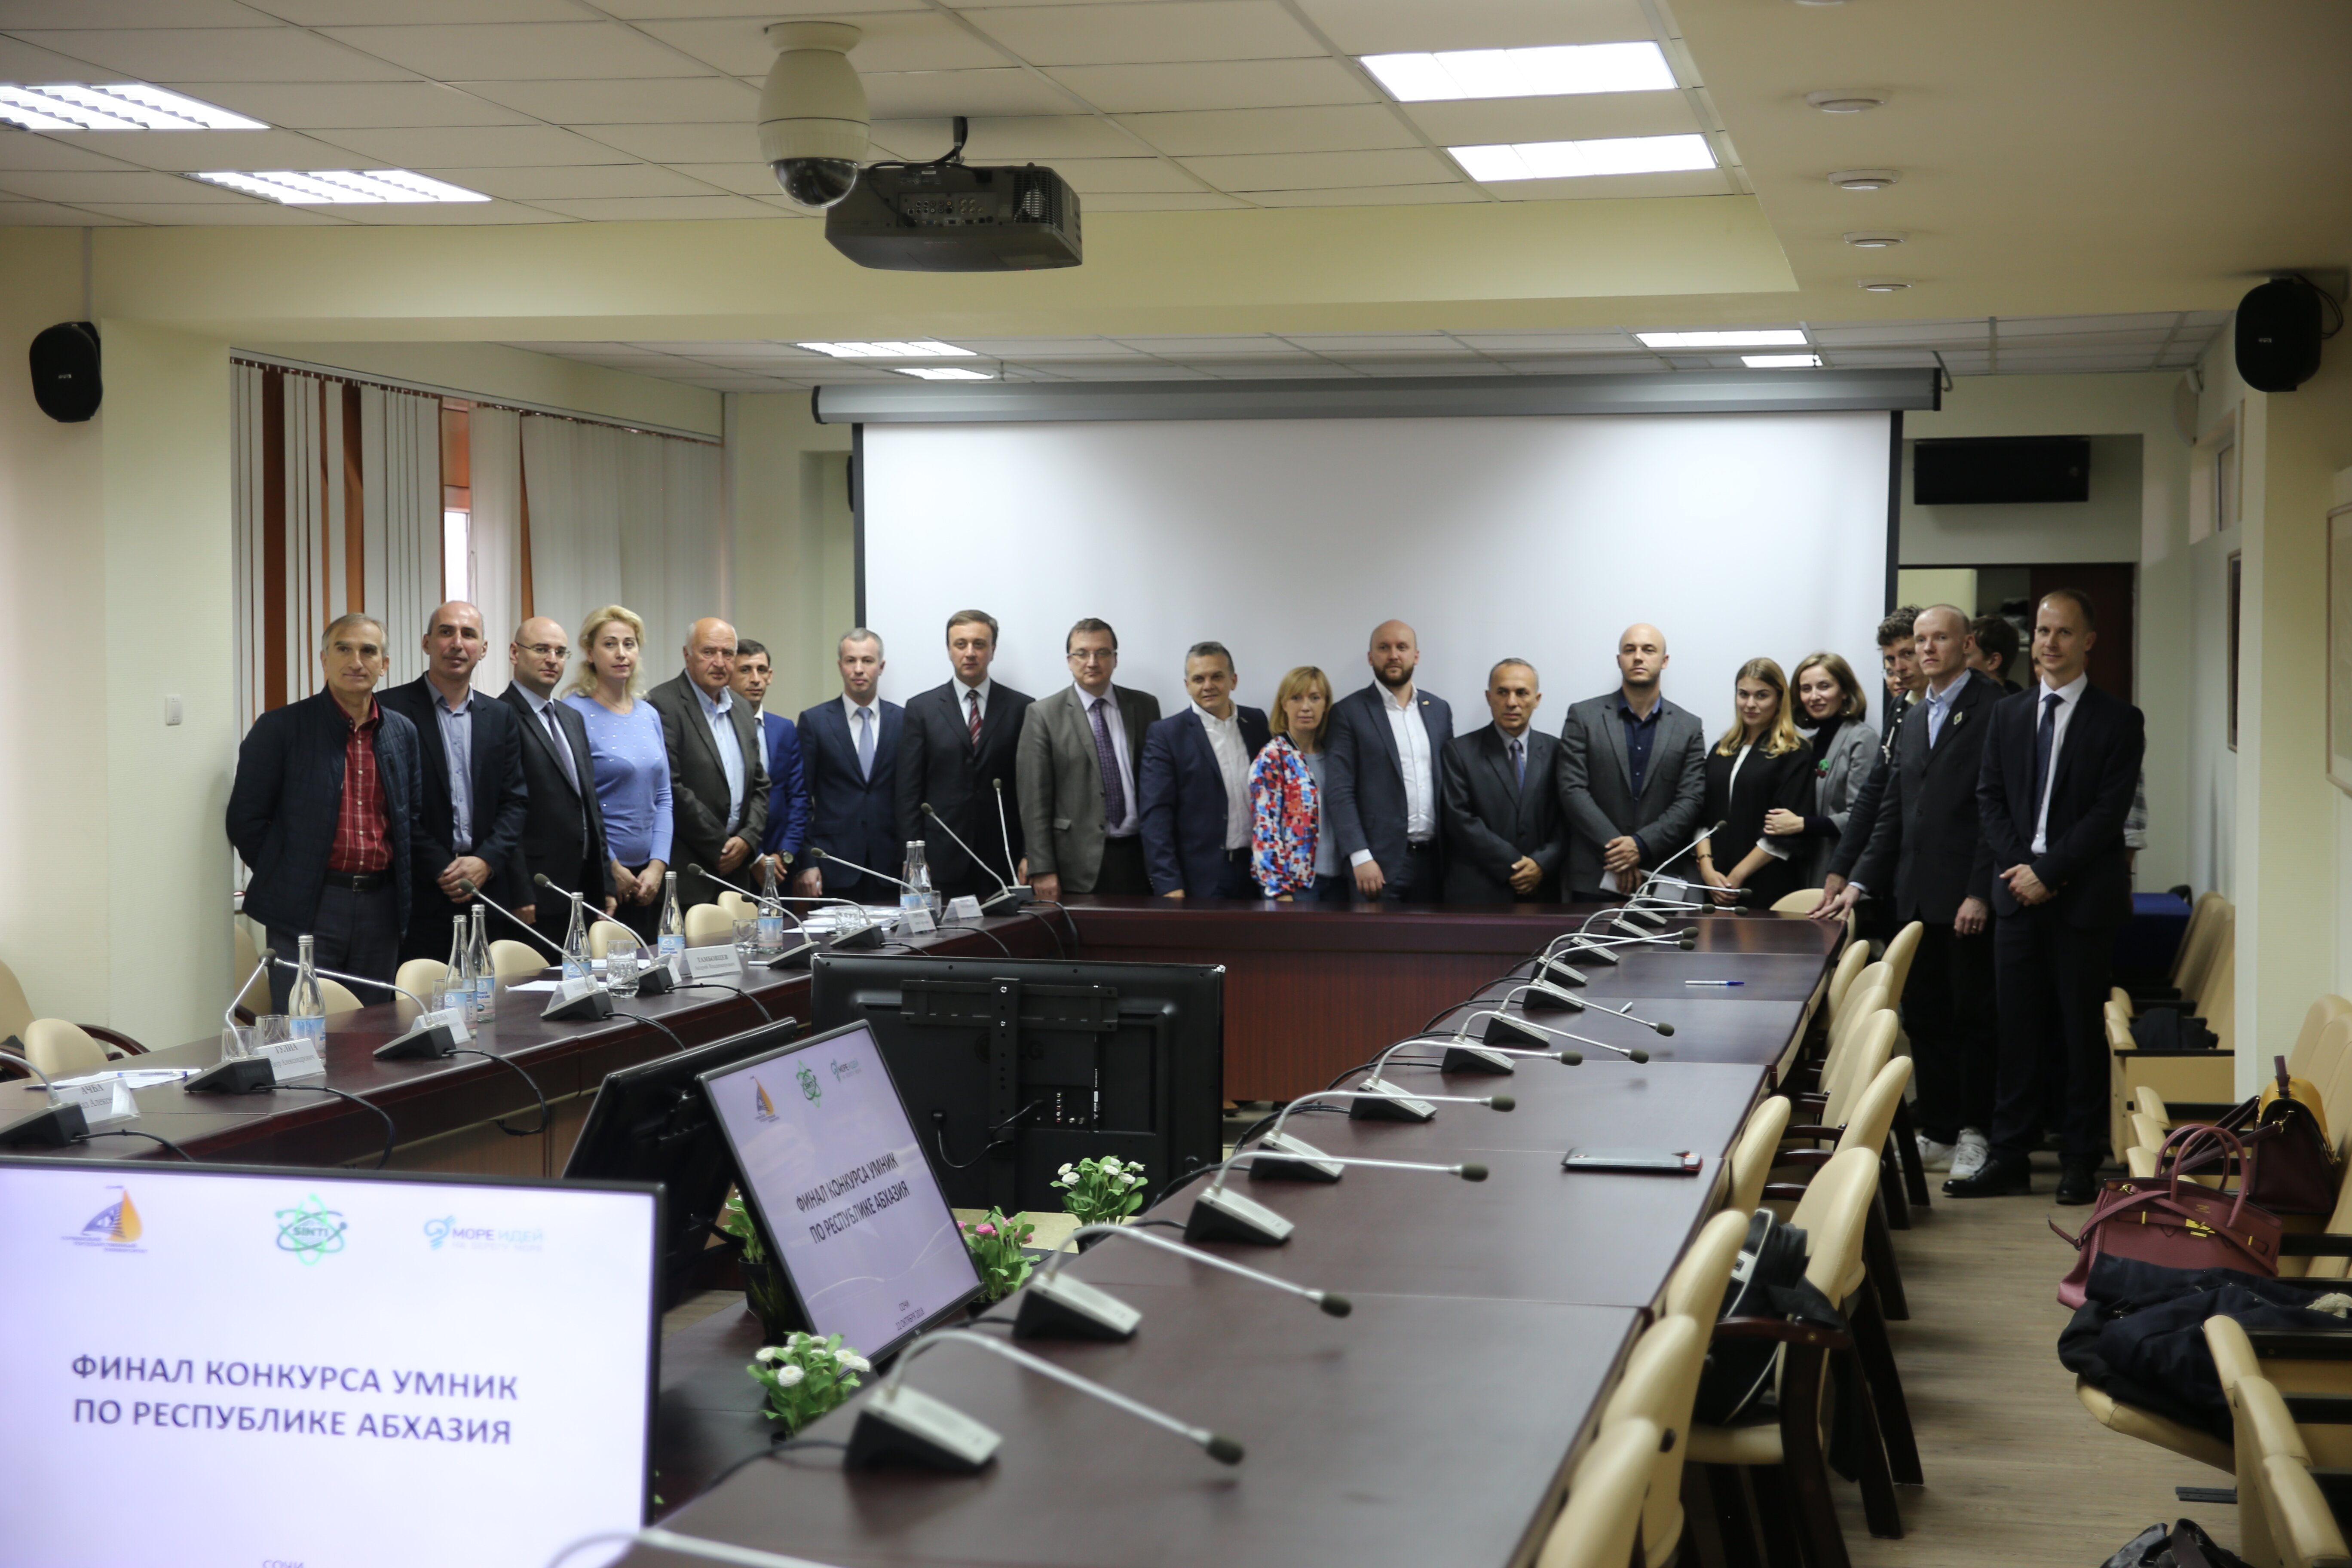 مشاركة غرفة تجارة وصناعة جمهورية أبخازيا في مسابقة " أمنيك " التي عقدتها المؤسسة الخاصة بمساعدة الابتكارات.